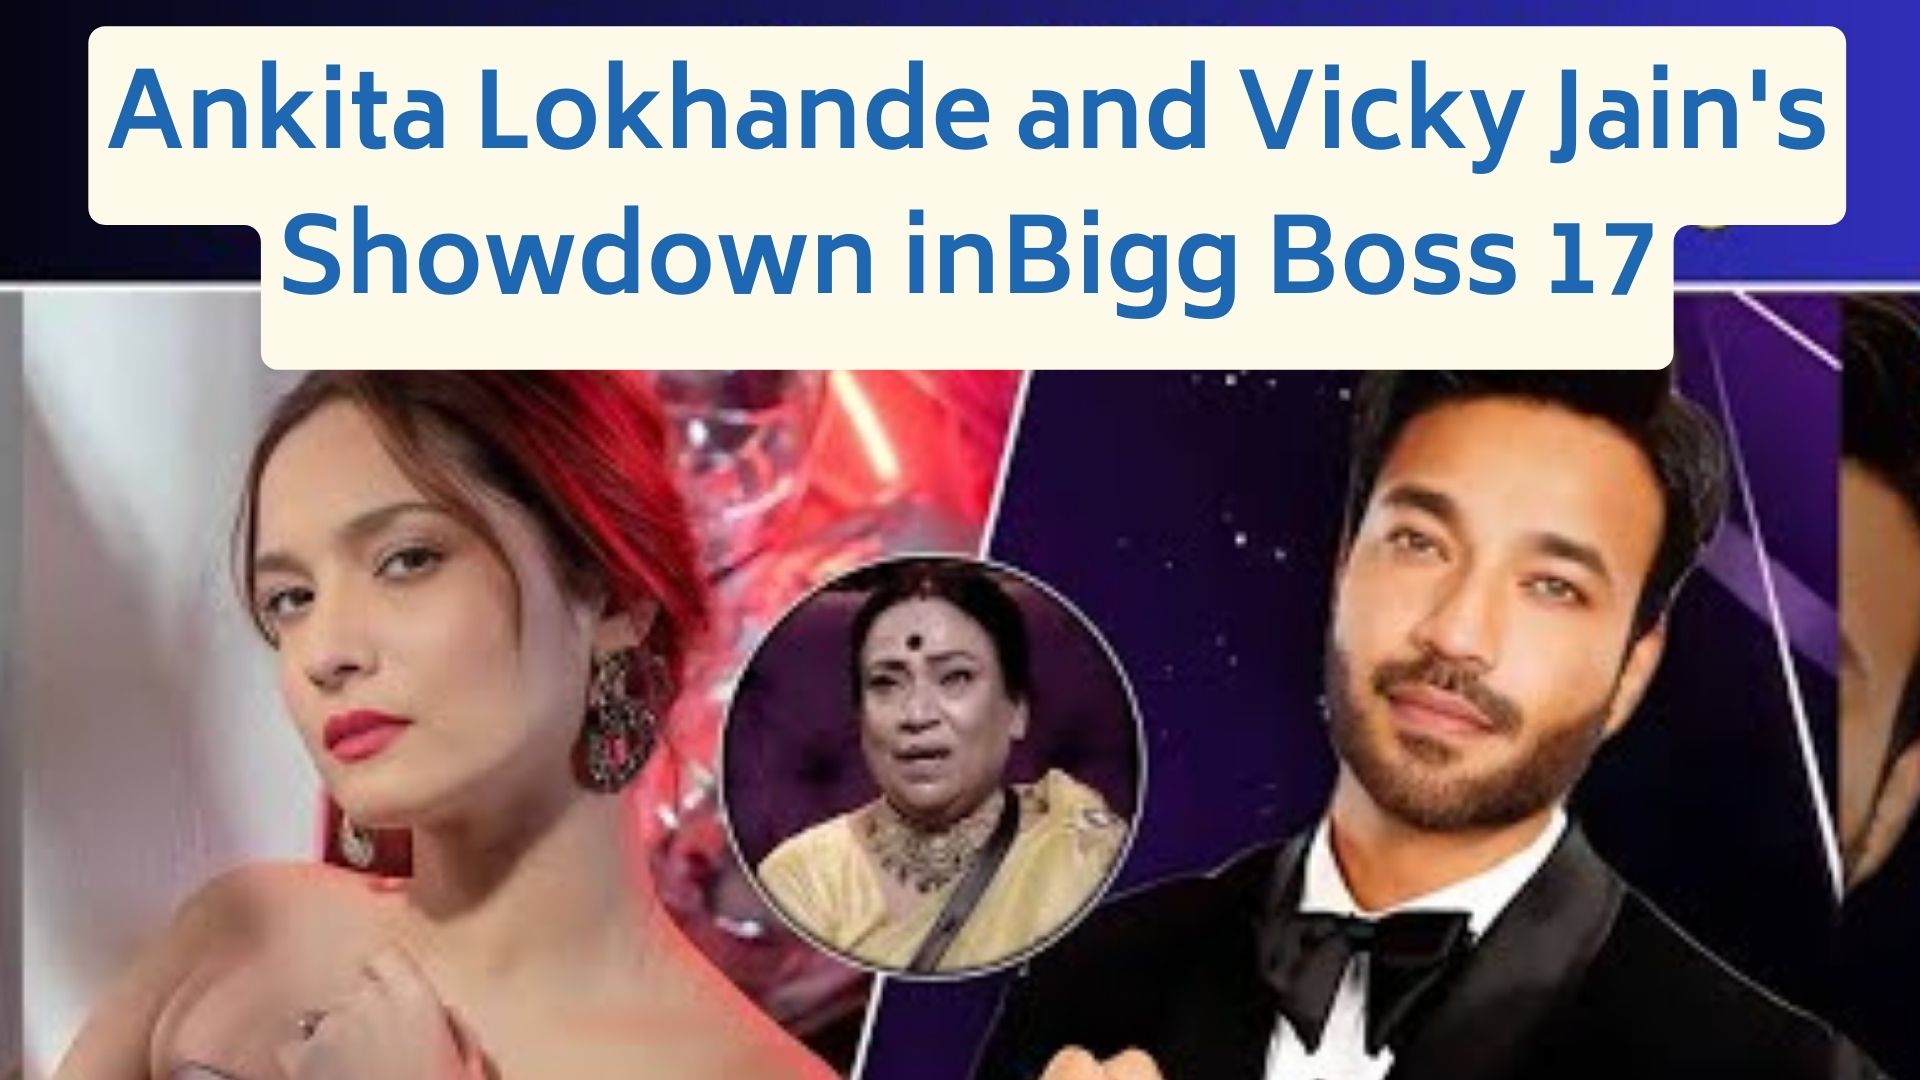 Ankita Lokhande and Vicky Jain's Showdown in Bigg Boss 17